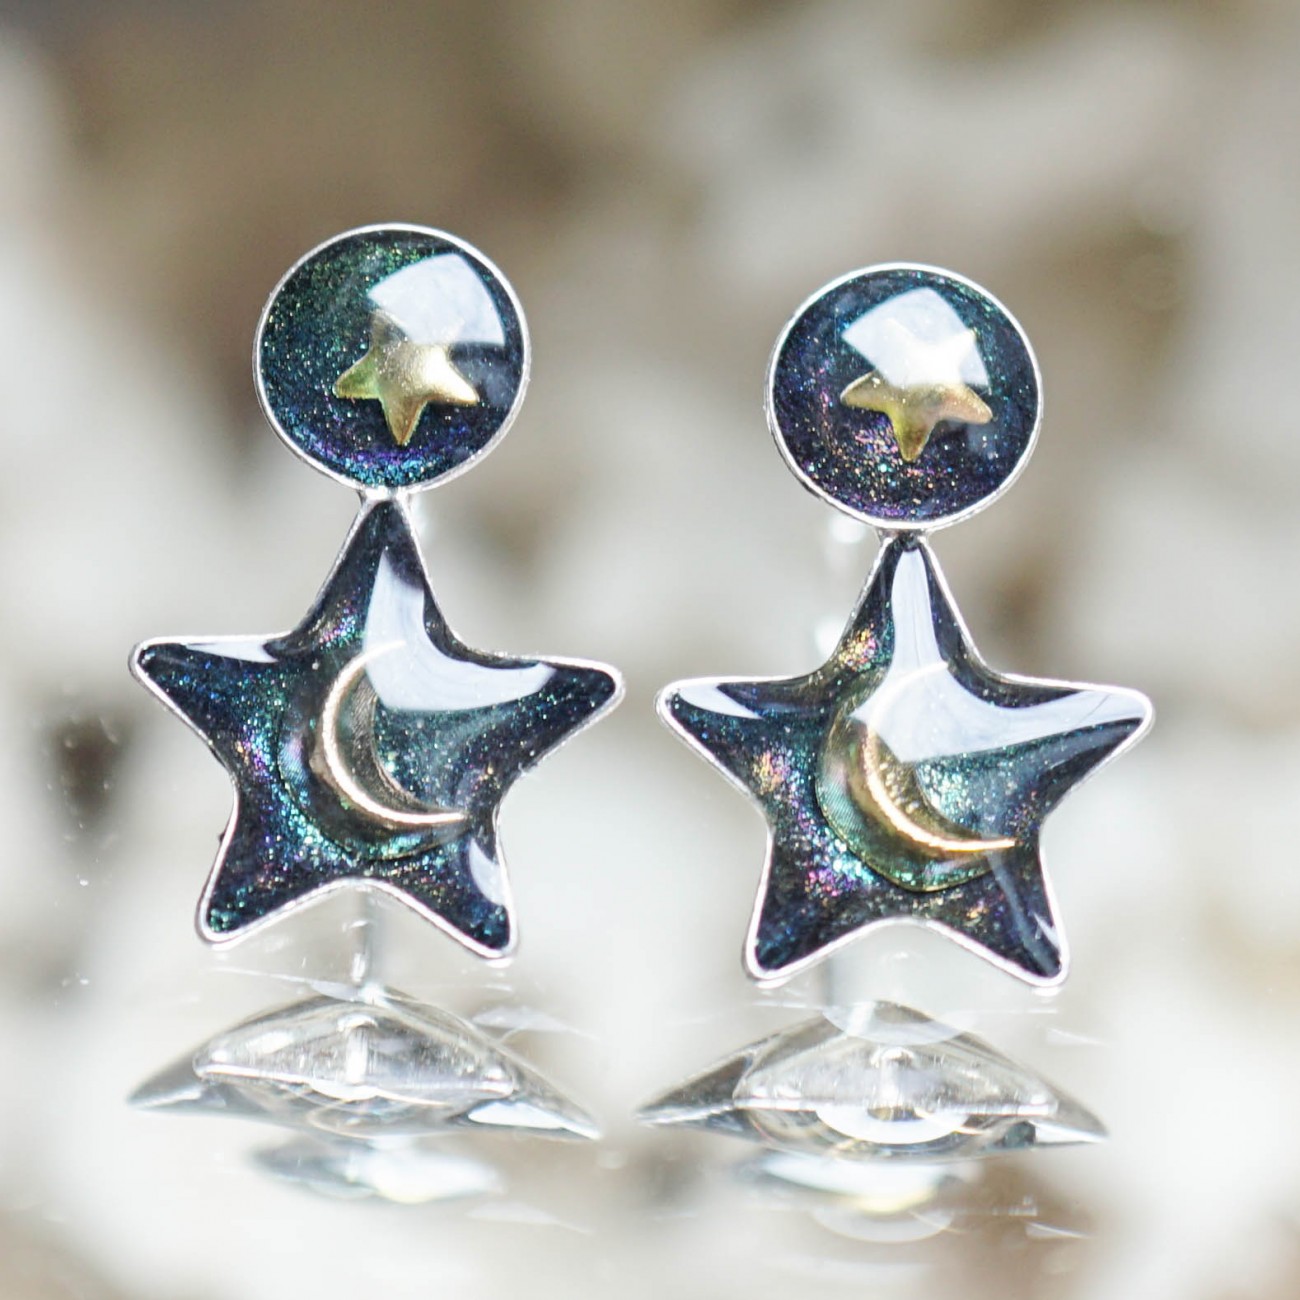 Pebs.ro | Silver Earrings Galaxy - Green Cosmic Fairy Tale |Galaxy  Collection | Jewlery, Silver, Earrings, Stud